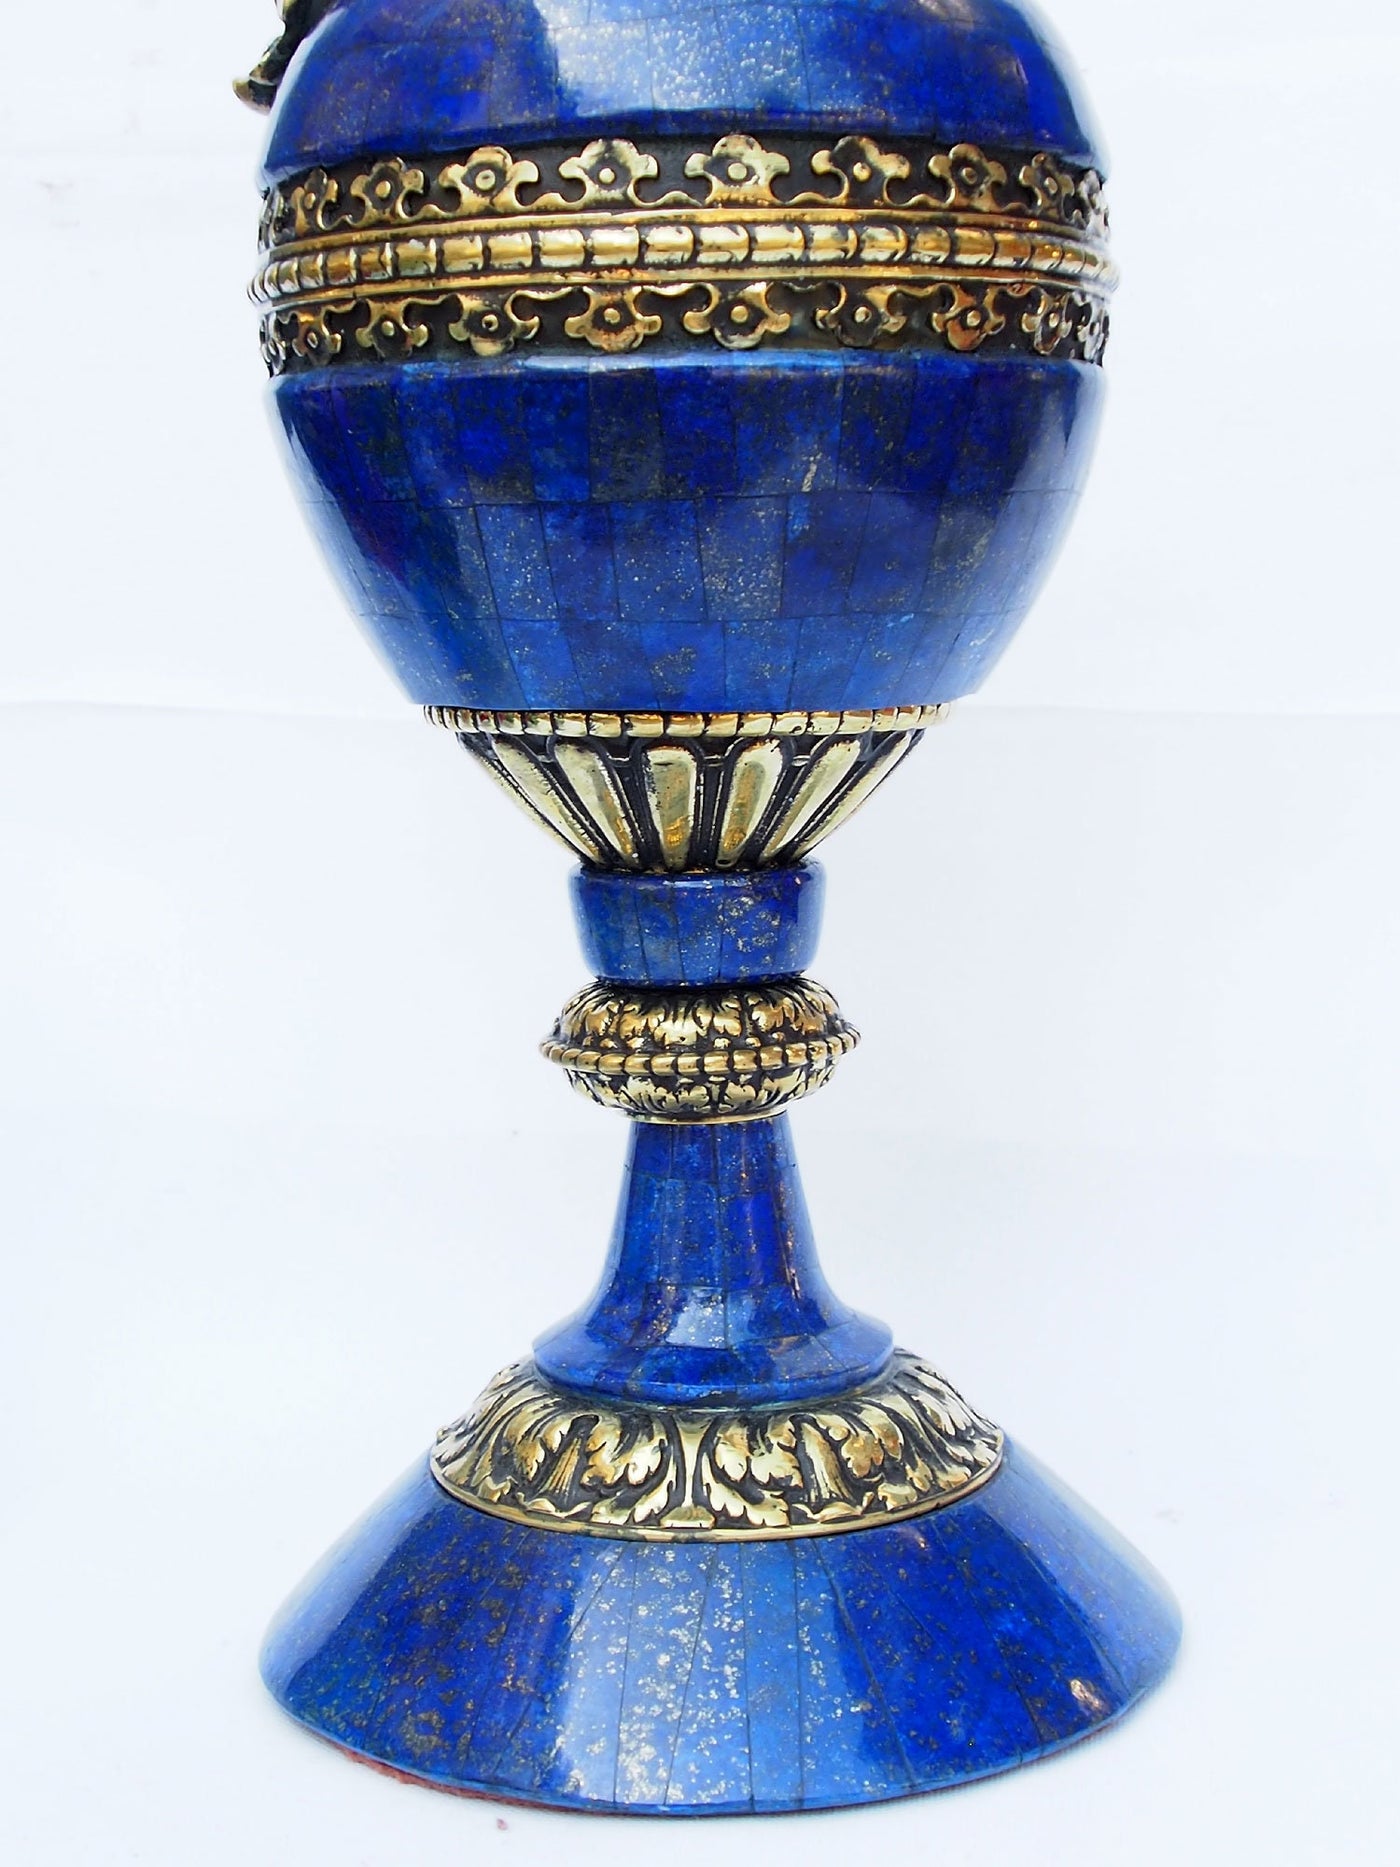 Extravagant Große Royal blau echt Lapis Lazuli - Messing ormolu montiert Vase Prunkvase Krug kerzenhalter aus Afghanistan kerzenständer  Orientsbazar   